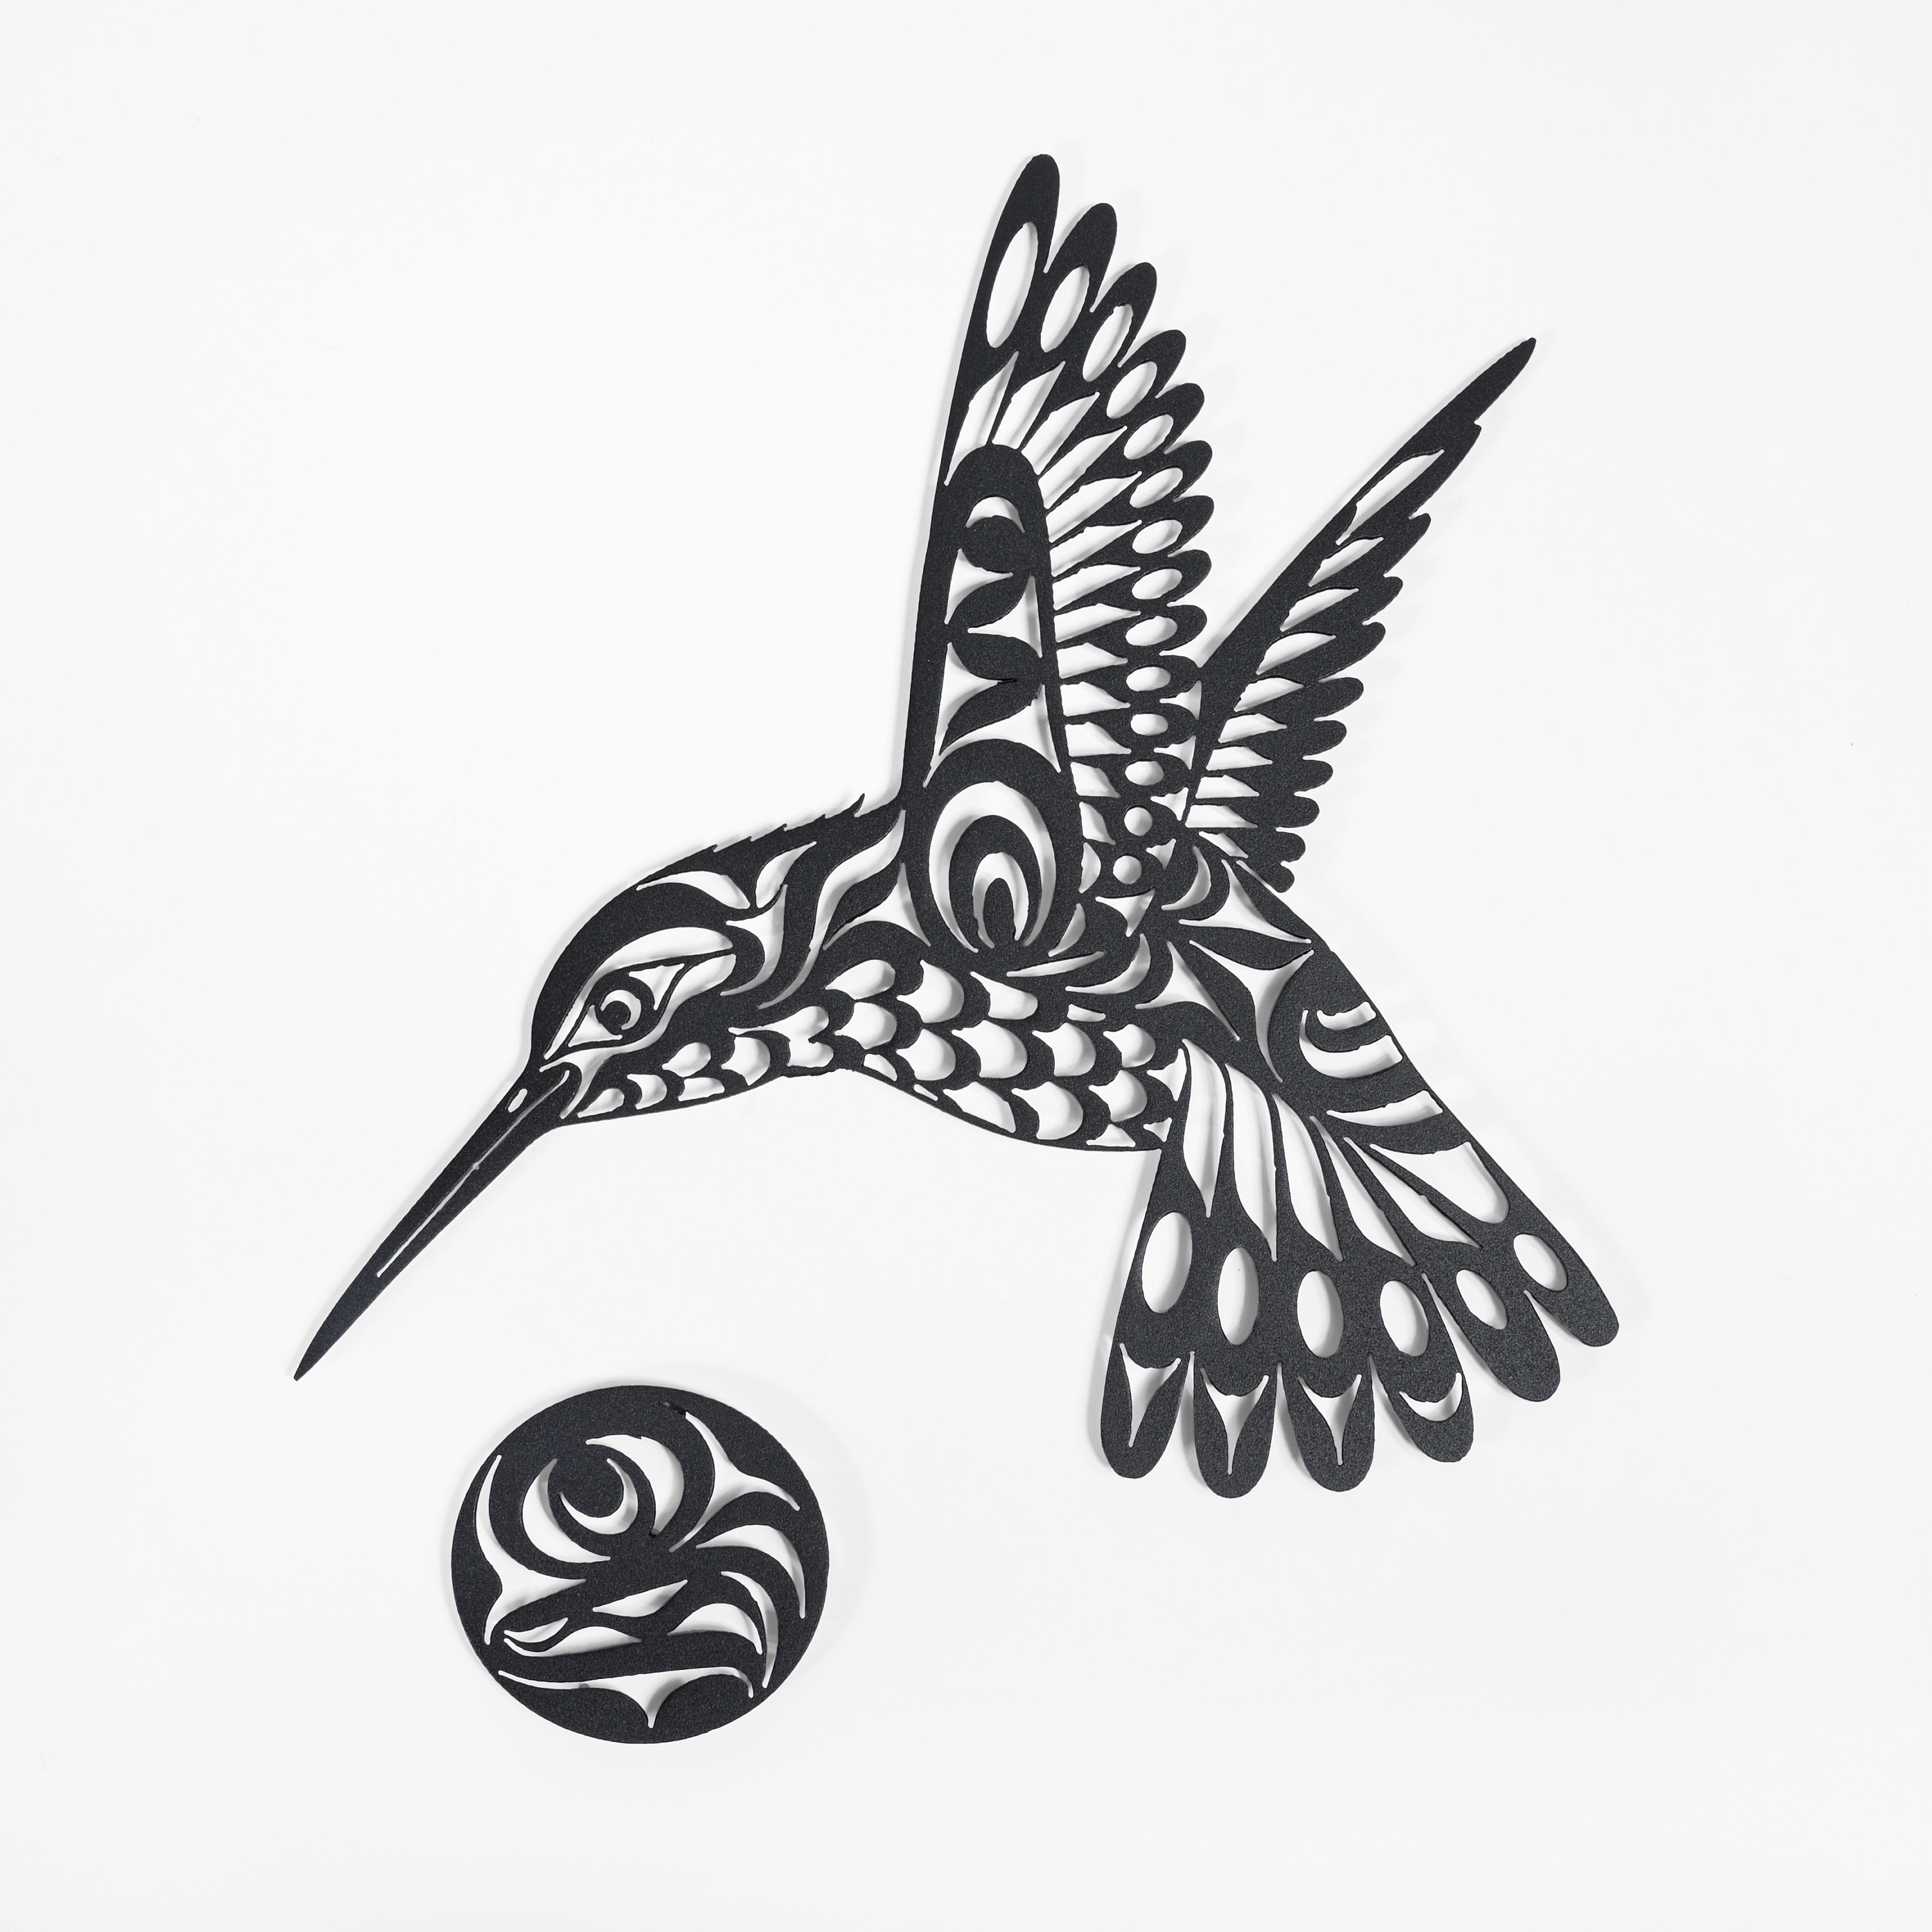 Discover more than 206 haida hummingbird tattoo